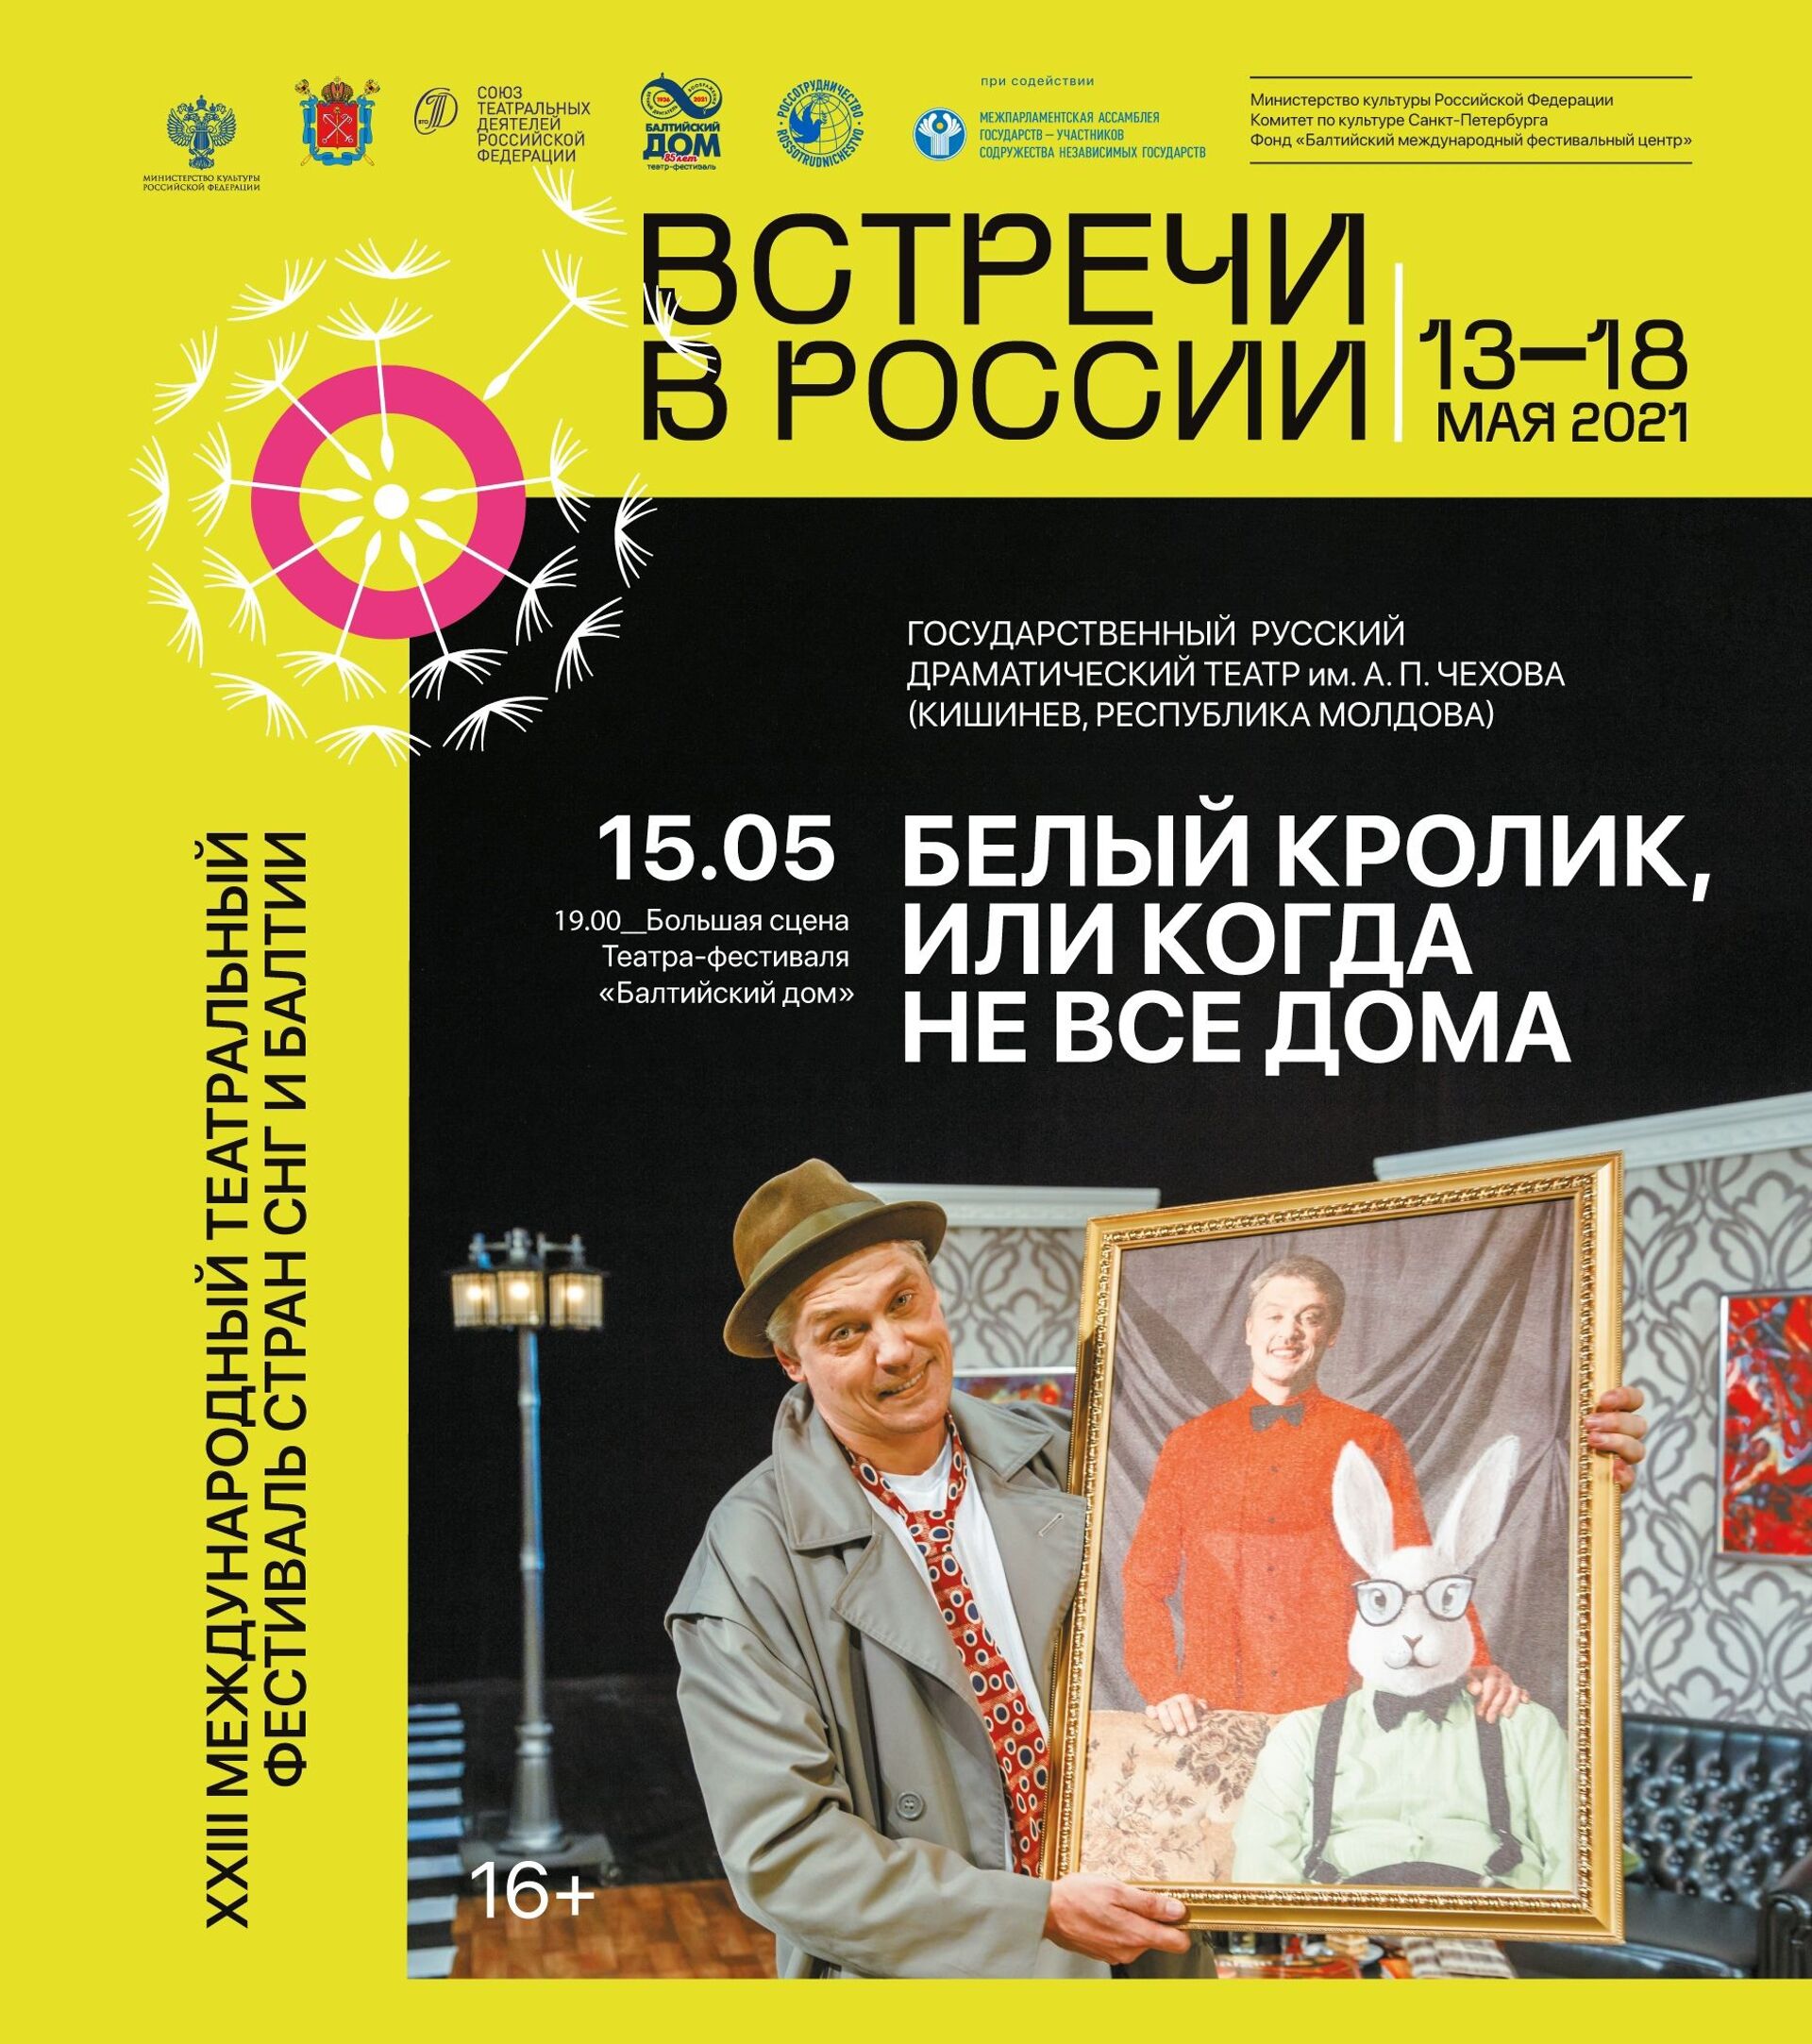 Un teatru din Moldova participă la Festivalul Internațional al țărilor CSI și Balticii - Sputnik Moldova, 1920, 15.05.2021